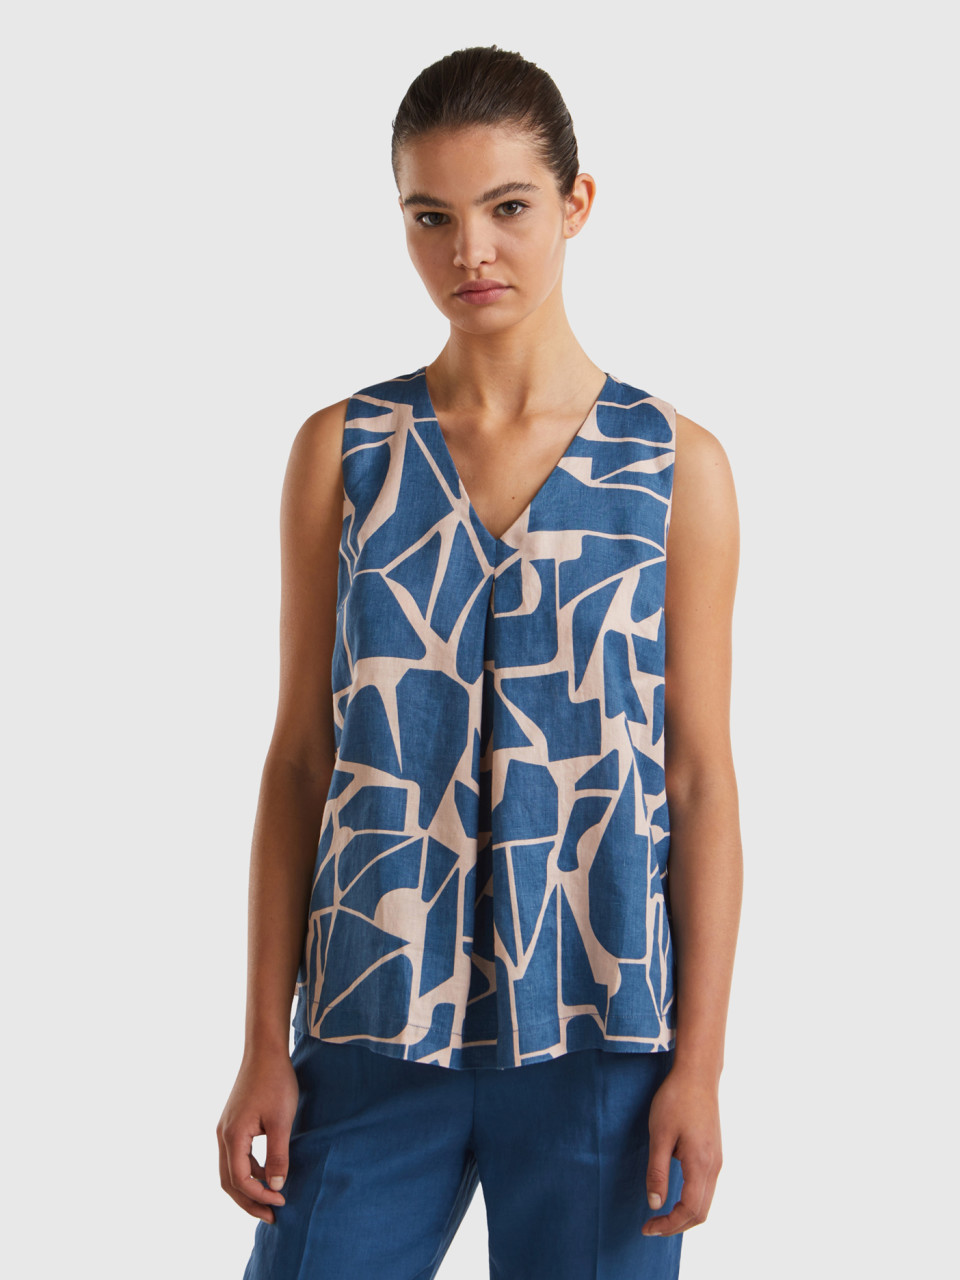 Benetton, Printed Linen Blouse, Air Force Blue, Women